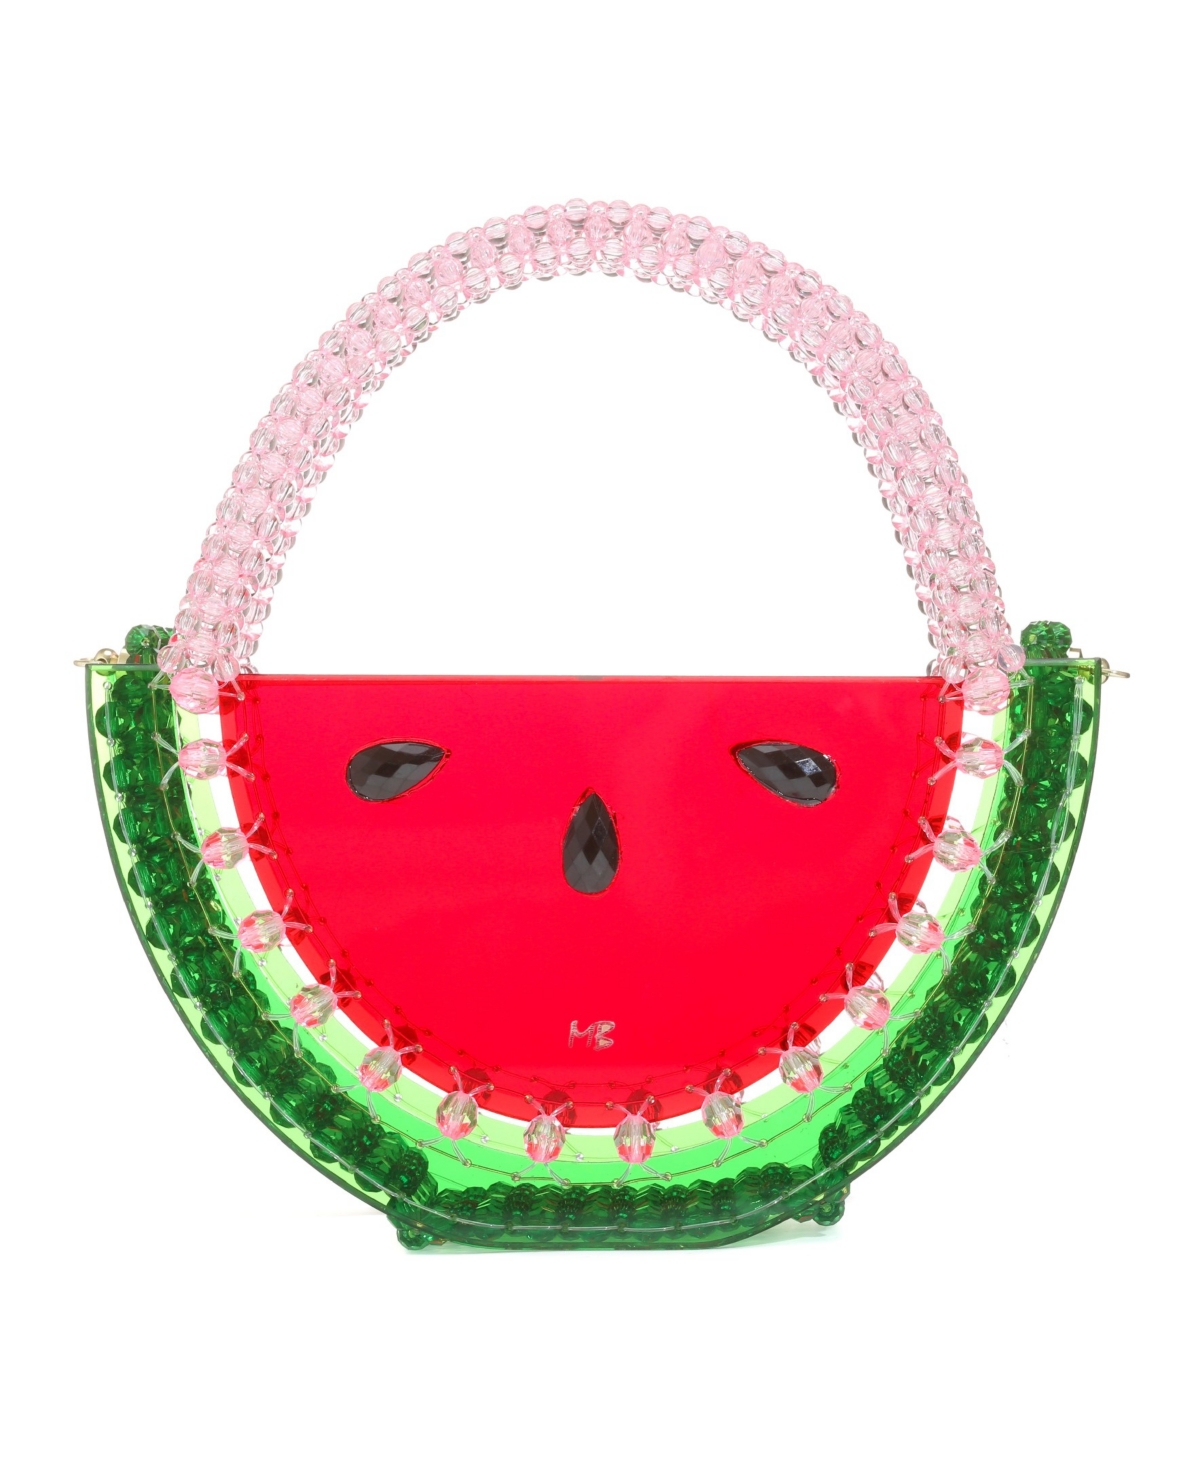 Women's Watermelon Beaded Clutch - Red